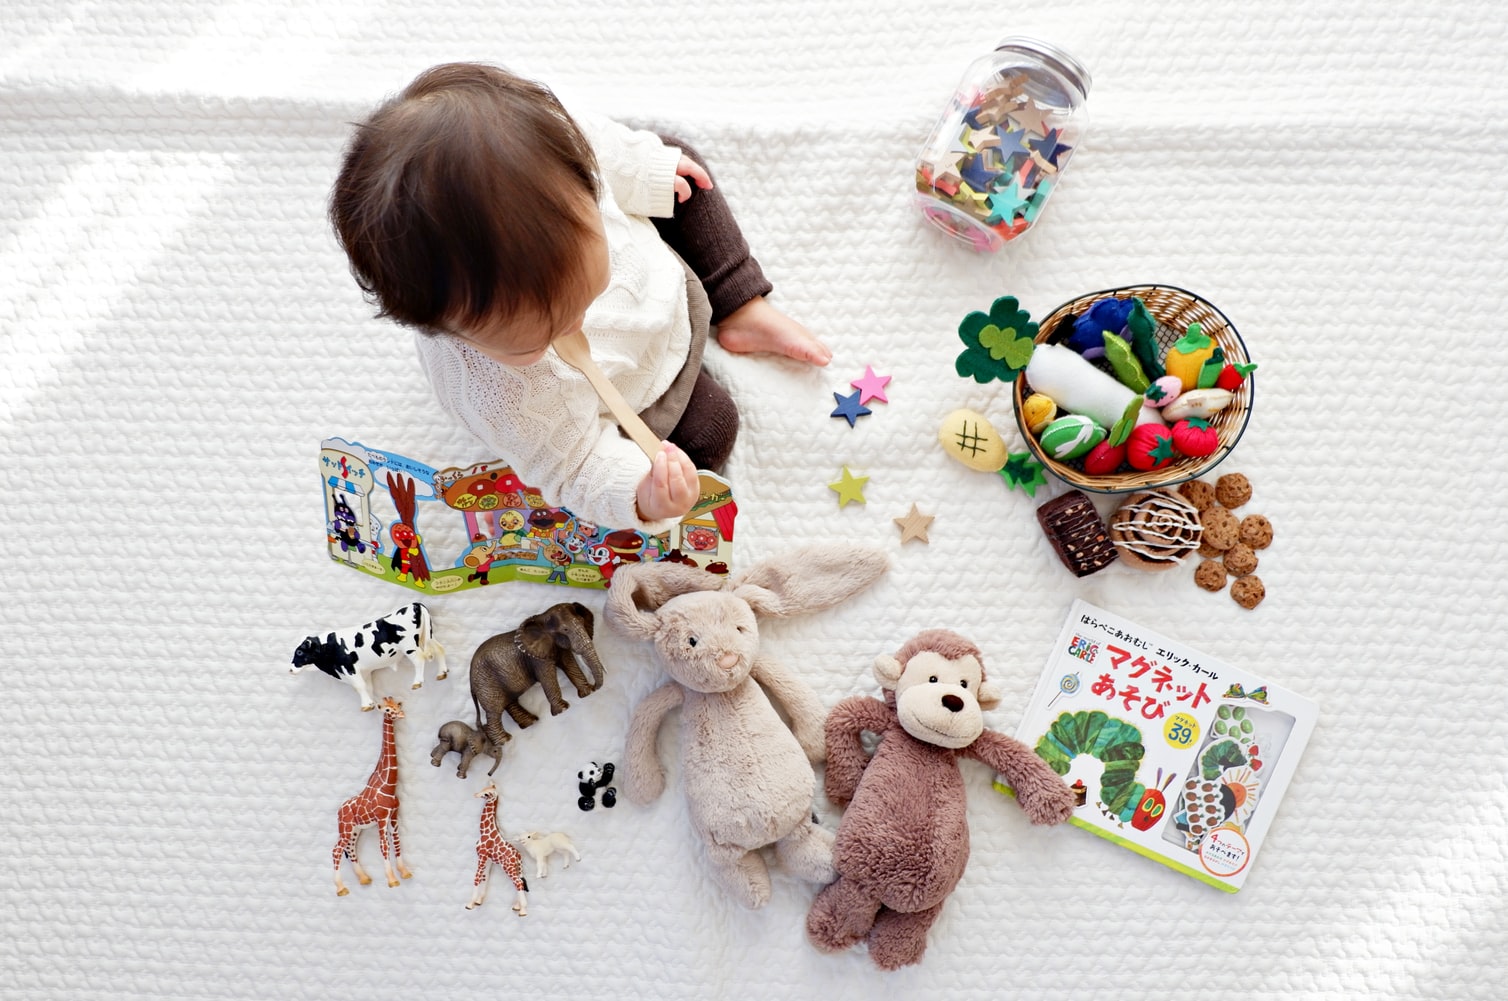 Enfant qui joue avec des jouets utiles à son développement psychomoteur